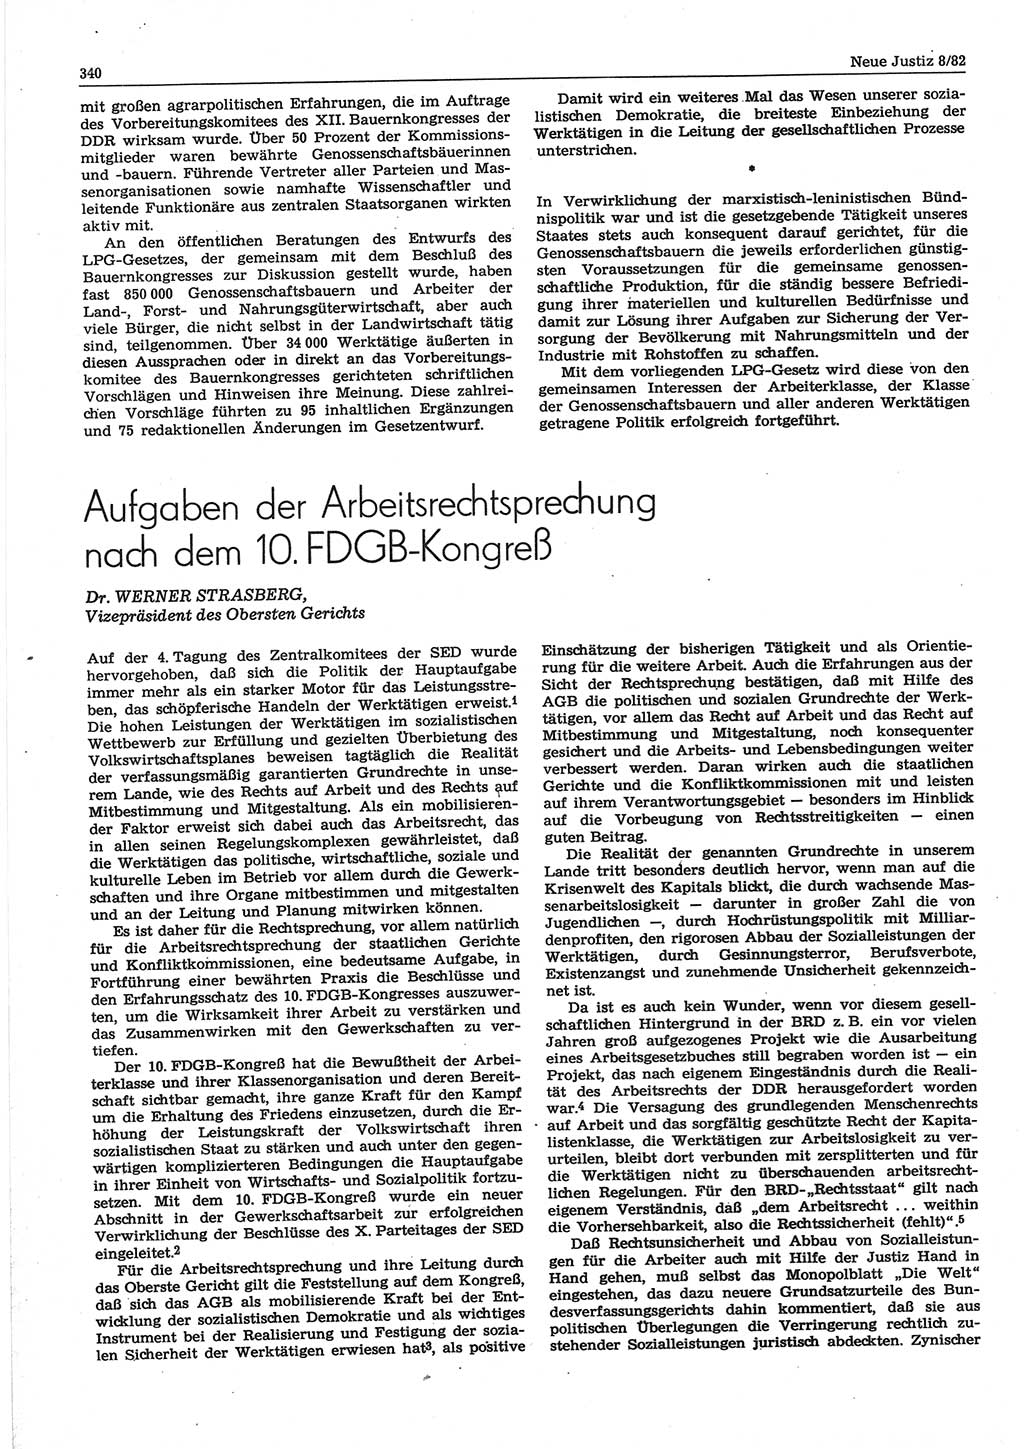 Neue Justiz (NJ), Zeitschrift für sozialistisches Recht und Gesetzlichkeit [Deutsche Demokratische Republik (DDR)], 36. Jahrgang 1982, Seite 340 (NJ DDR 1982, S. 340)